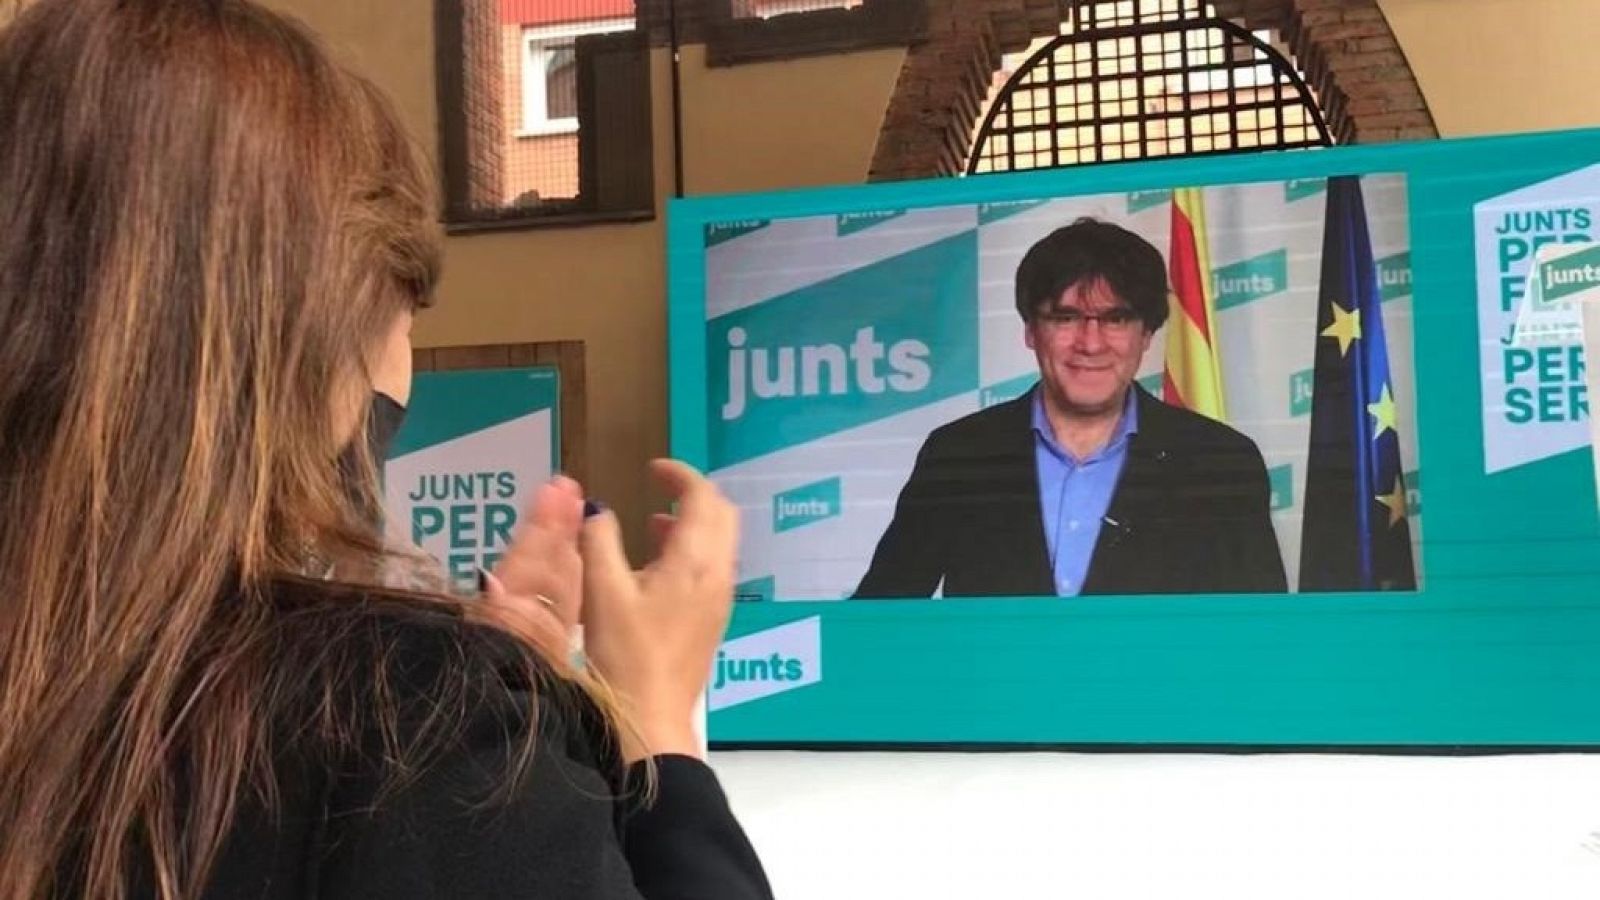 La candidata de Junts, Laura Borràs, escucha la intervención de Carles Puigdemont por videoconferencia en un acto electoral en Sant Cugat del Vallès.